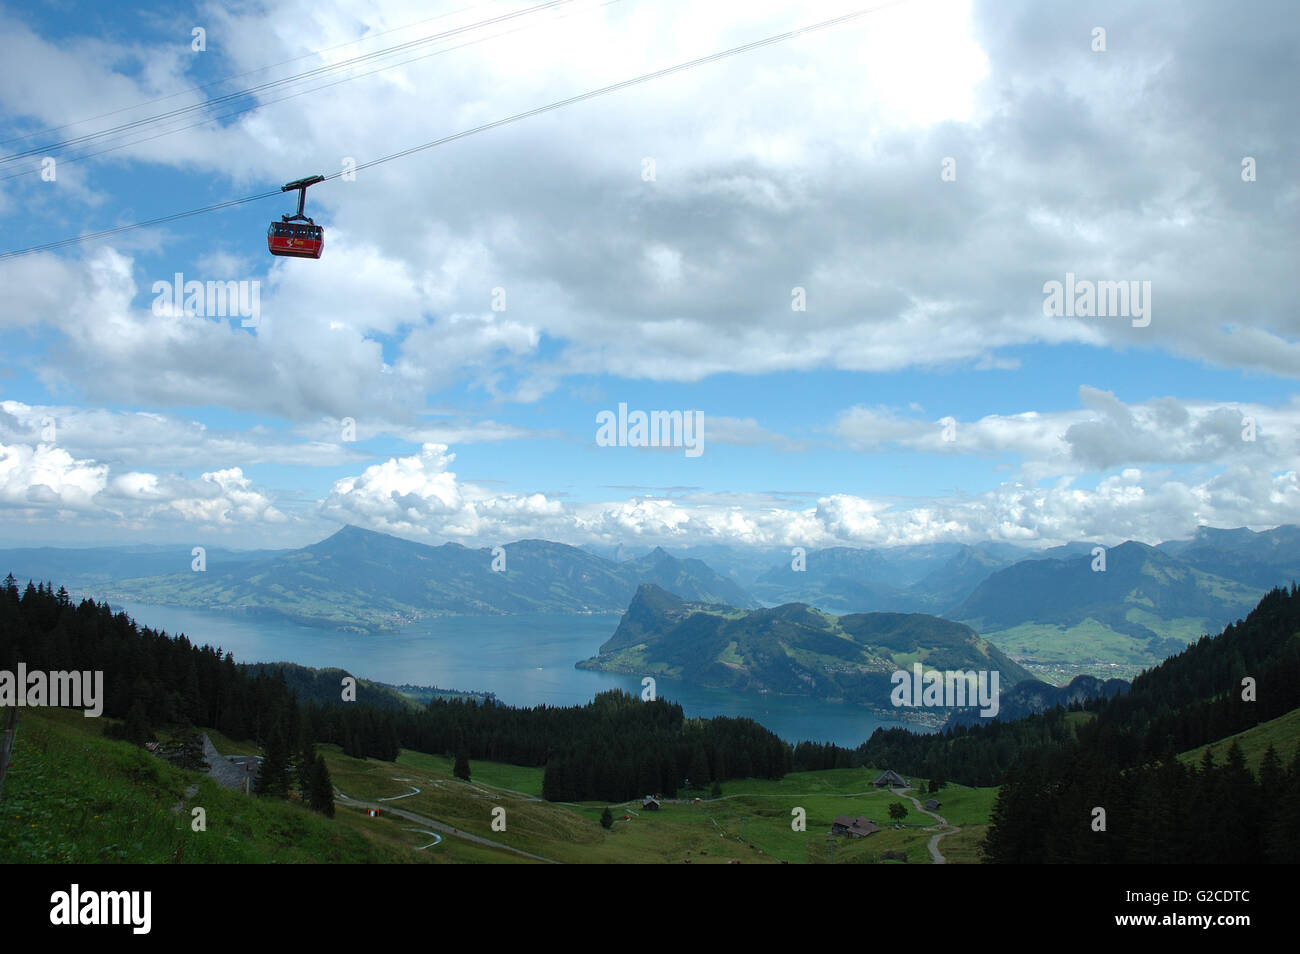 Monte Pilatus telecabina, el lago (Vierwaldstattersee) y montañas cerca de Lucerna en Suiza Foto de stock